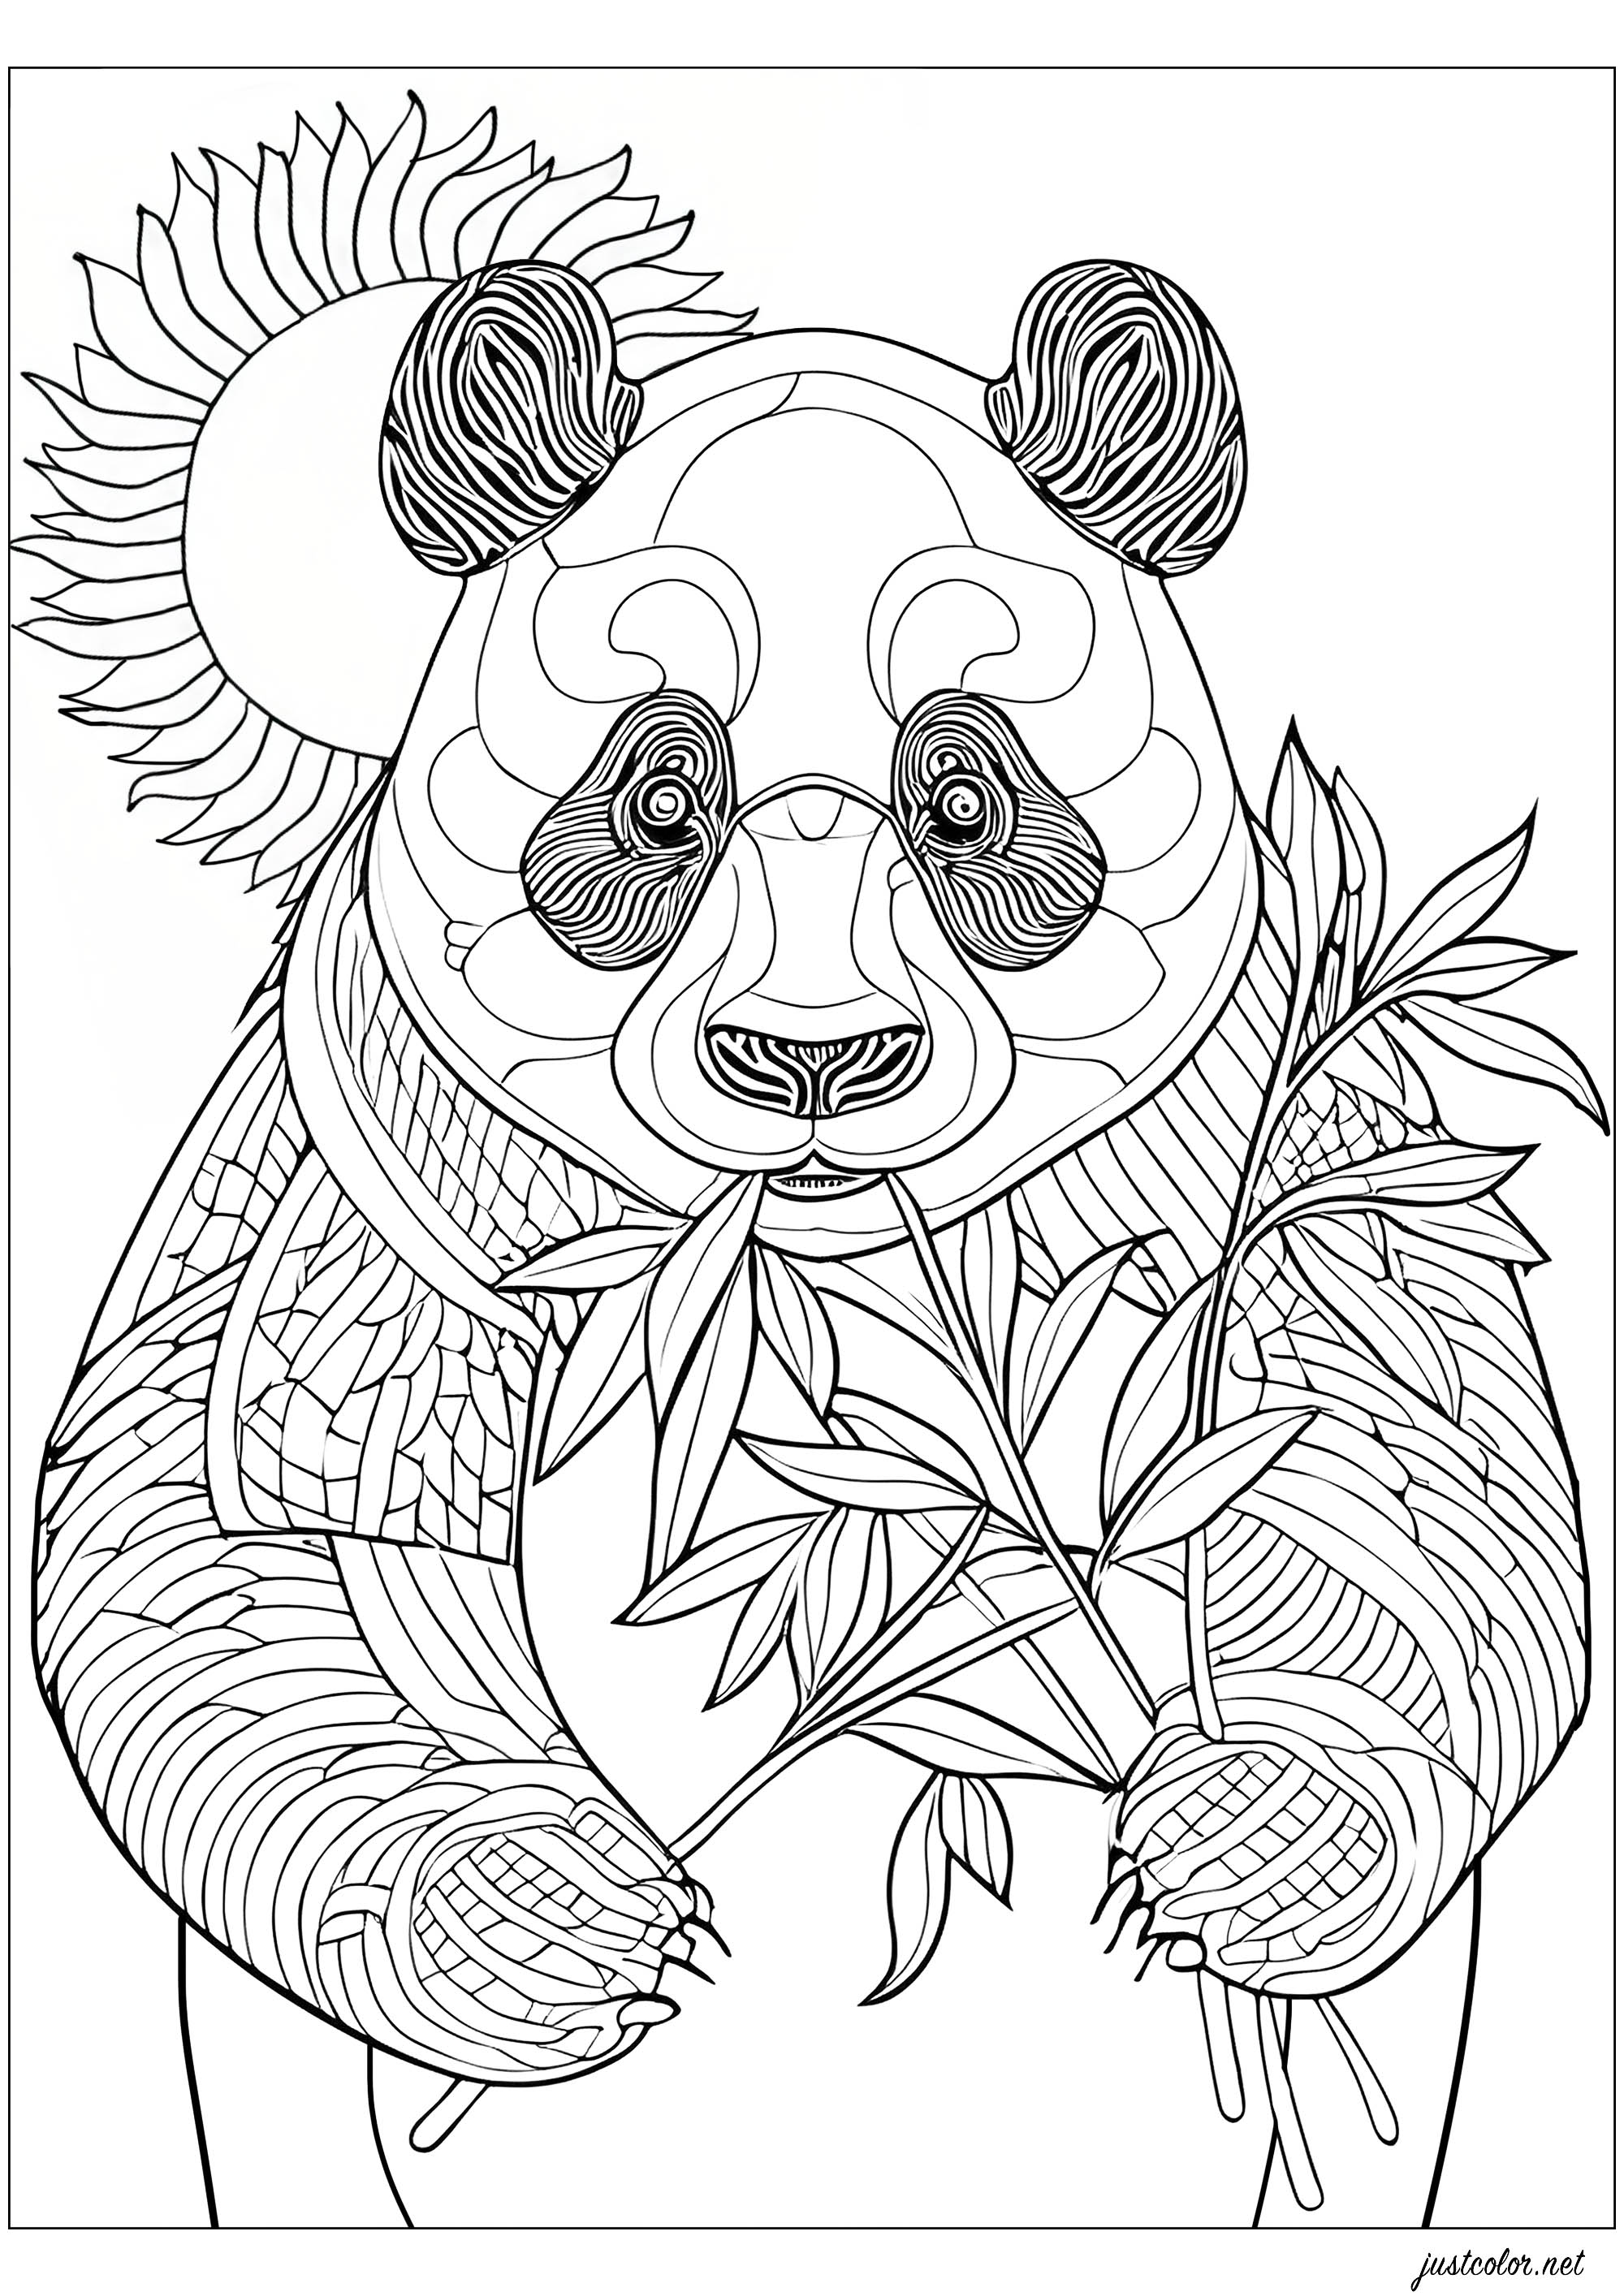 Panda frisst Bambus, stehend. Färbt auch die hübsche Sonne hinter ihm